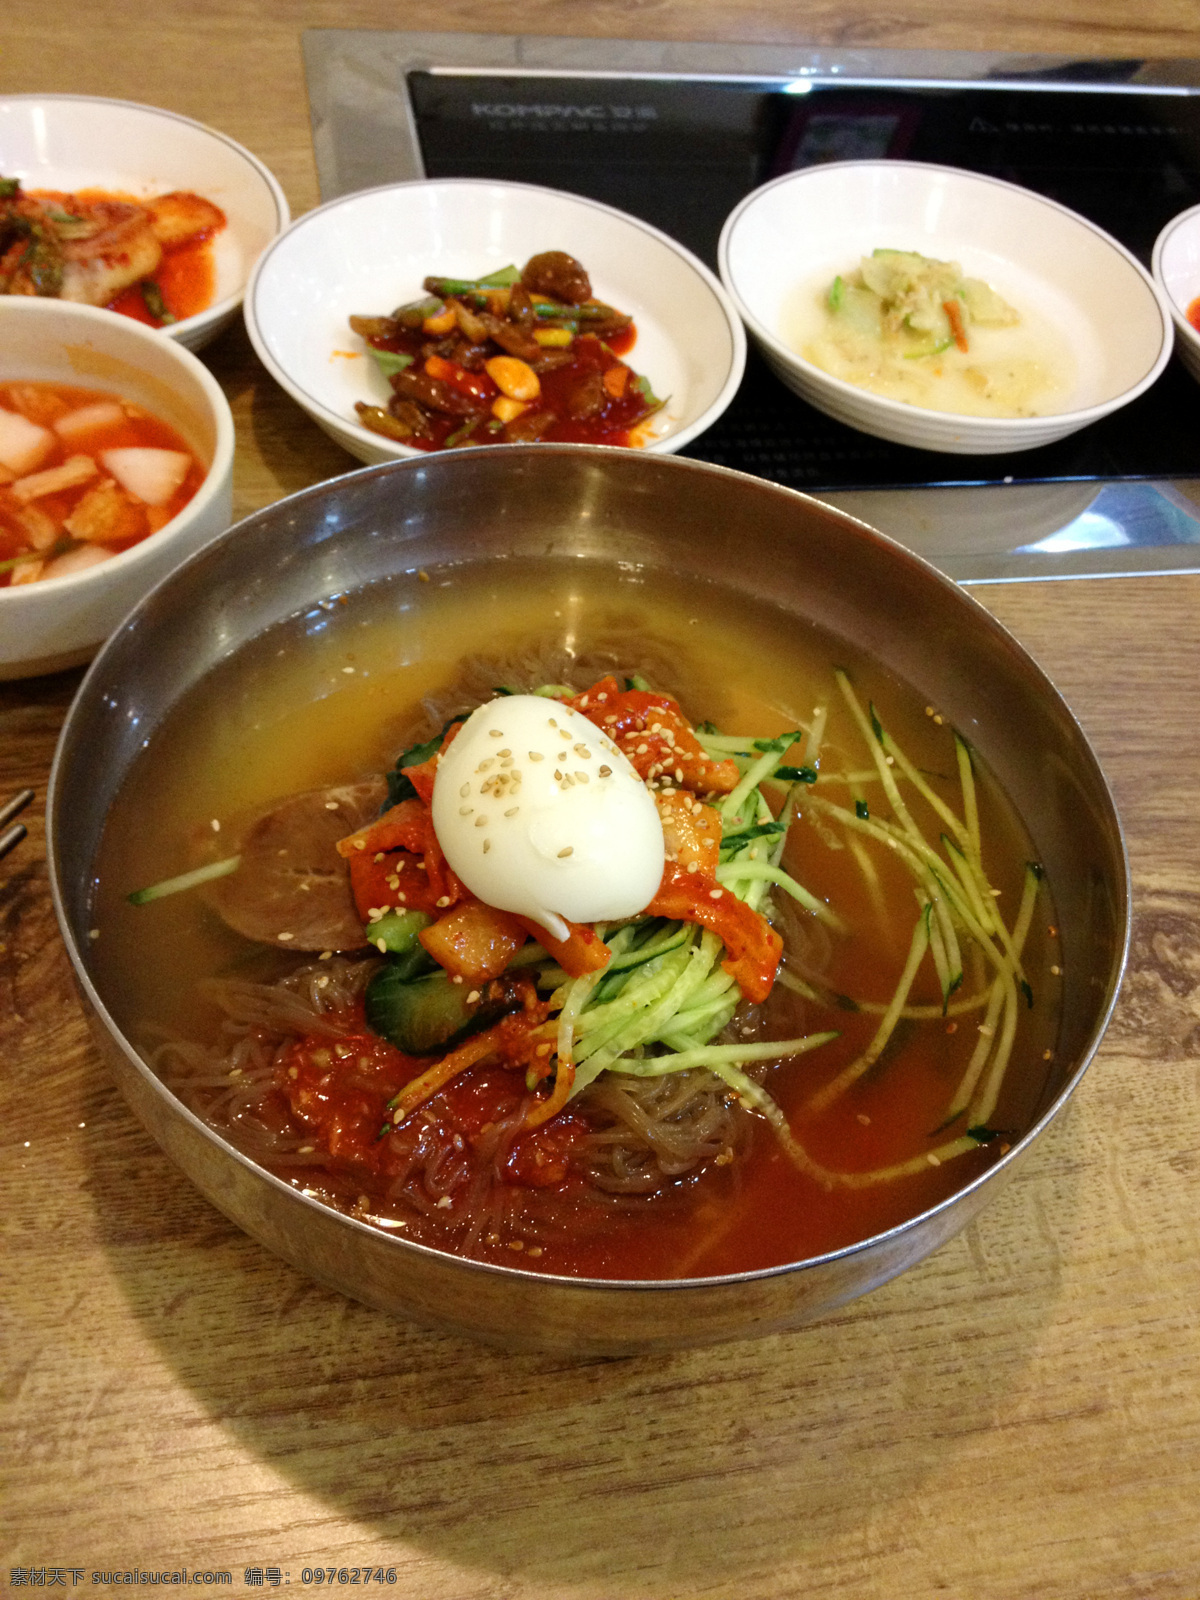 冷面 小咸菜 鲜族冷面 大冷面 韩国冷面 餐饮美食 传统美食 韩国美食 韩国料理 韩式冷面 朝鲜冷面 特色冷面